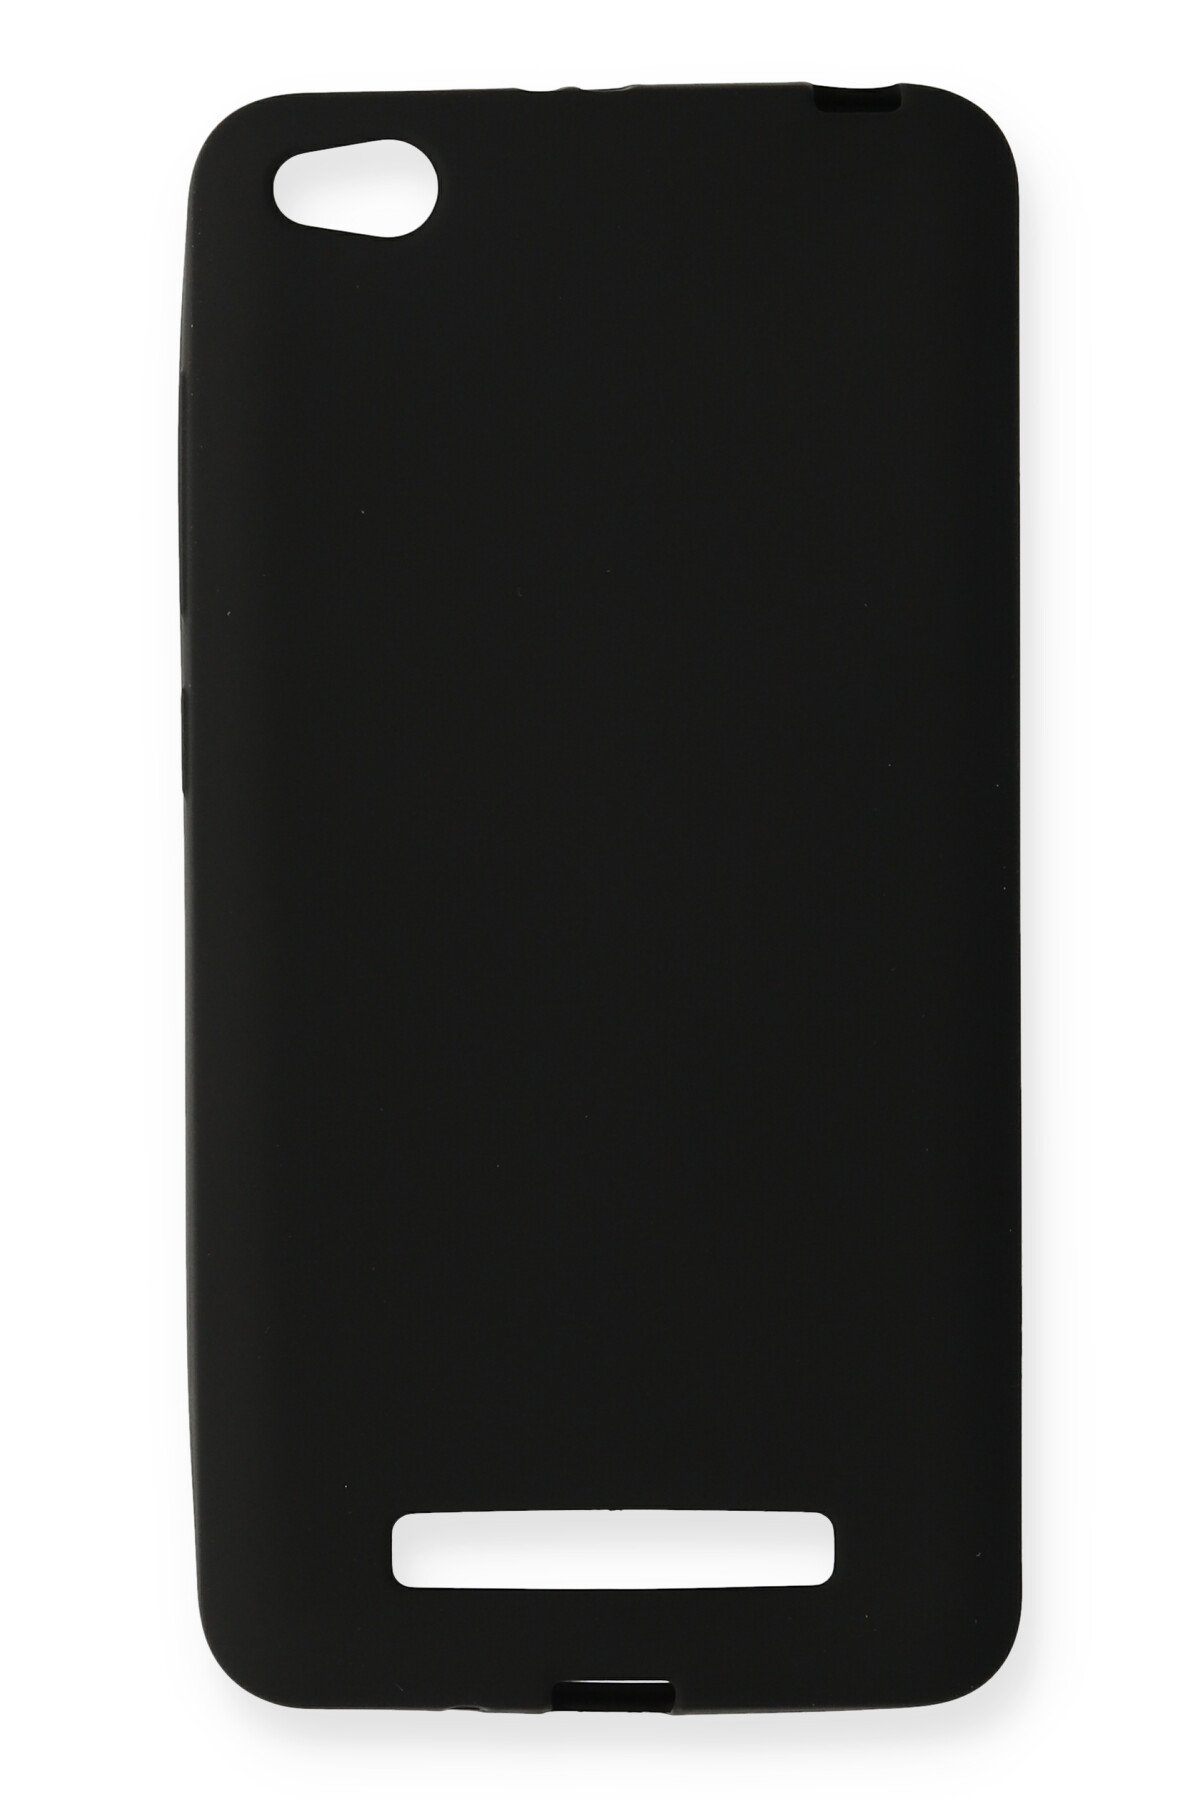 NewFace Newface Xiaomi Redmi 4A Kılıf Premium Rubber Silikon - Siyah